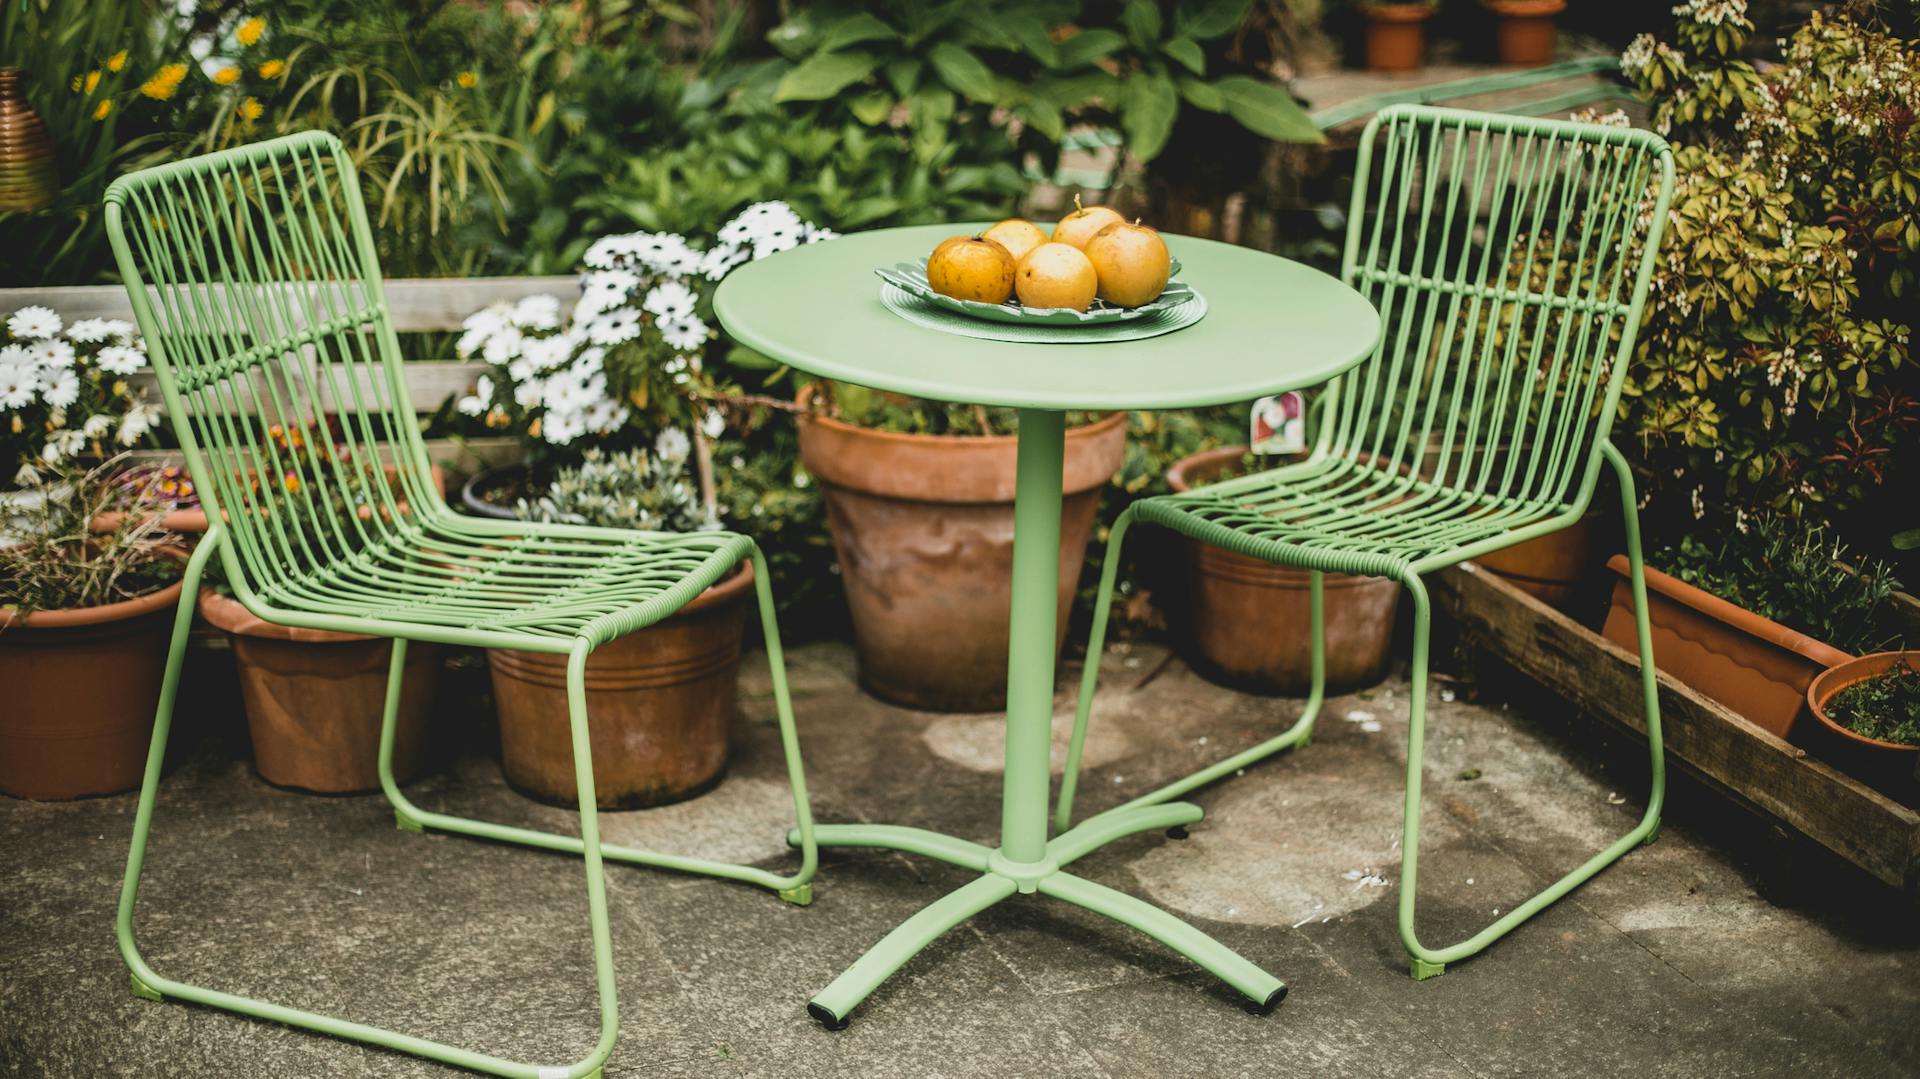 Grüne Gartenmöbel aus Kunststoff stehen im Garten.